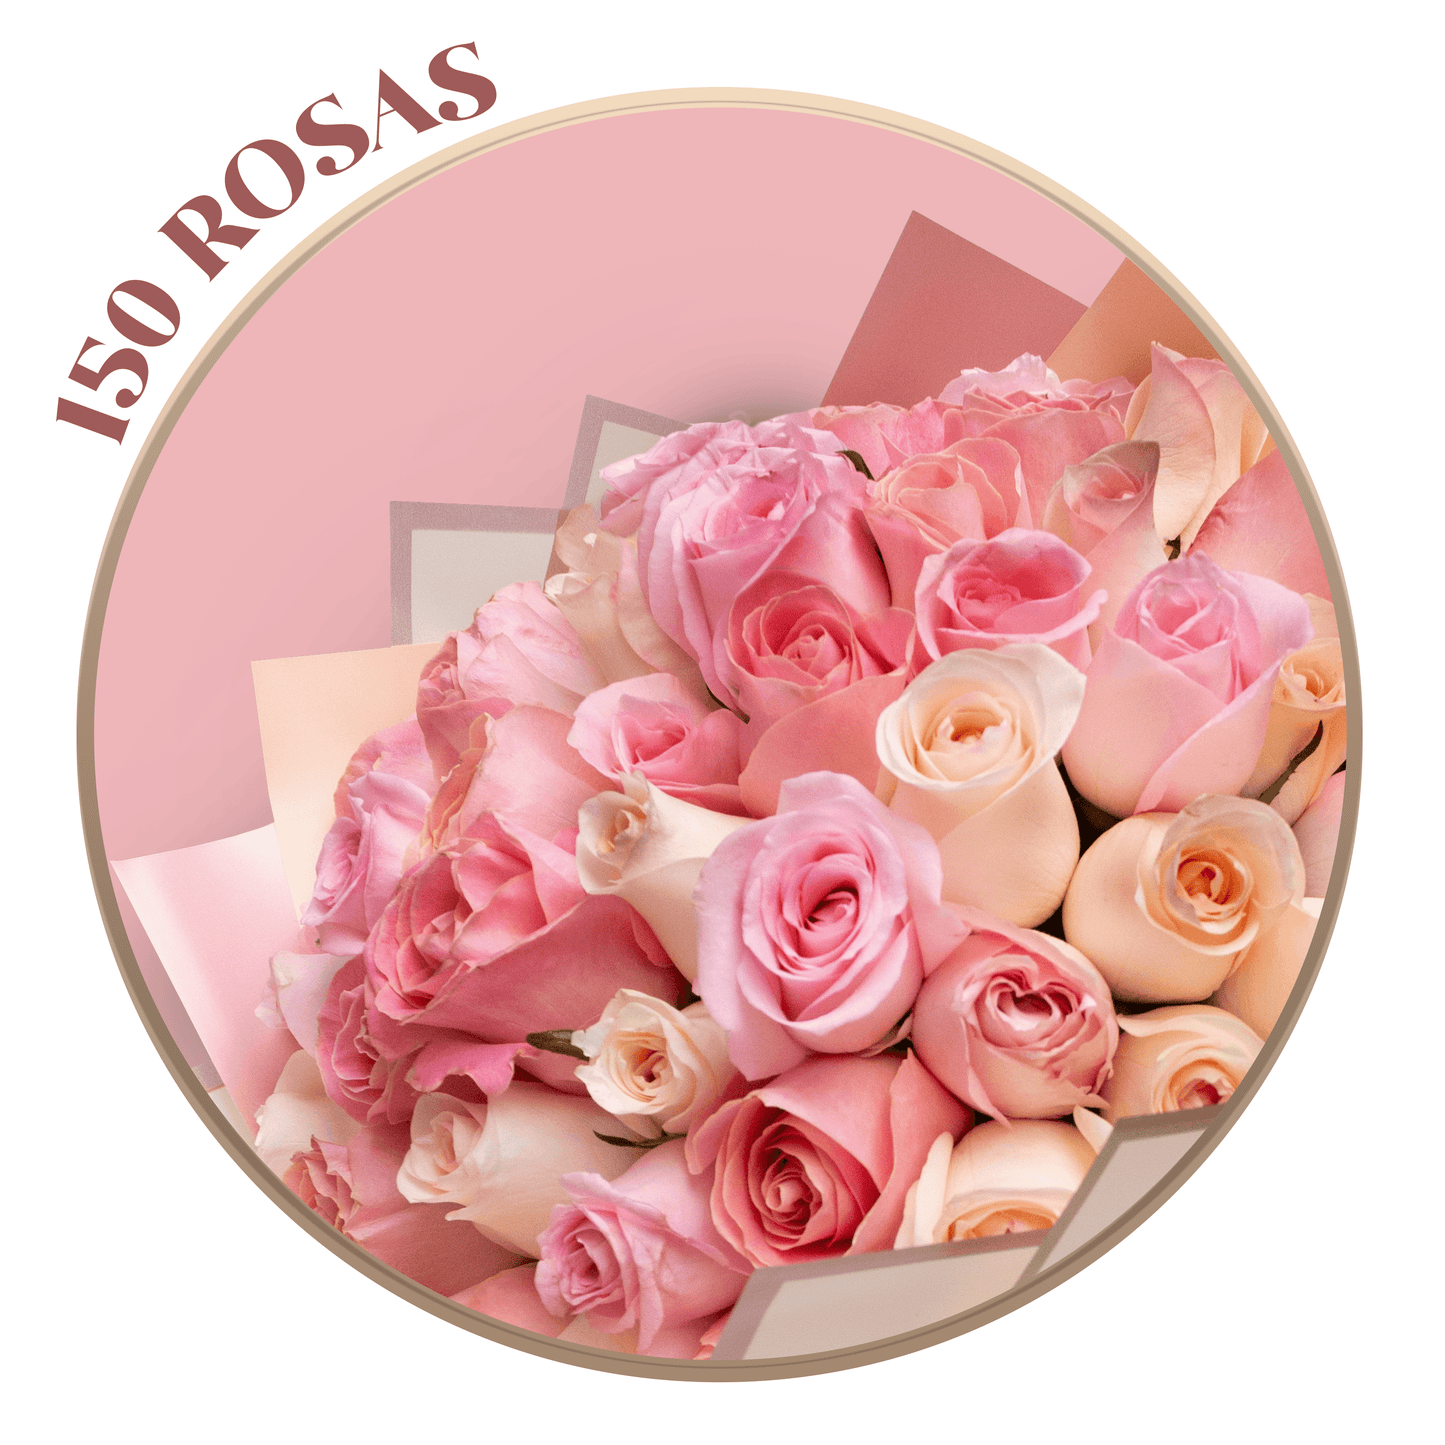 Ramo de Rosas Rosas (Hermosas, Caricia y Señorita), presentación de 50, 100 o 150 rosas